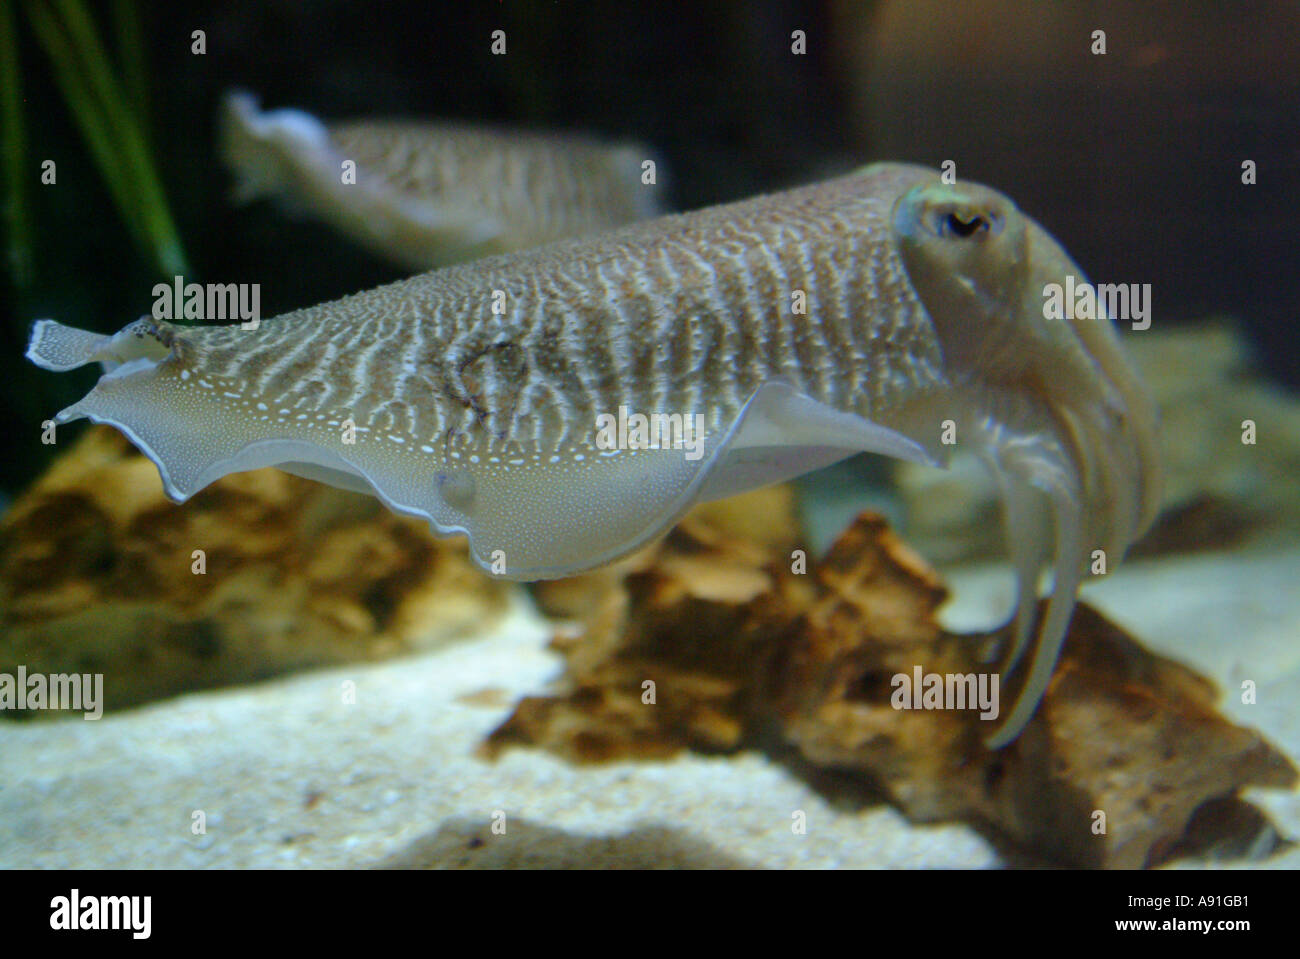 Cuttle fish in aquarium Stock Photo